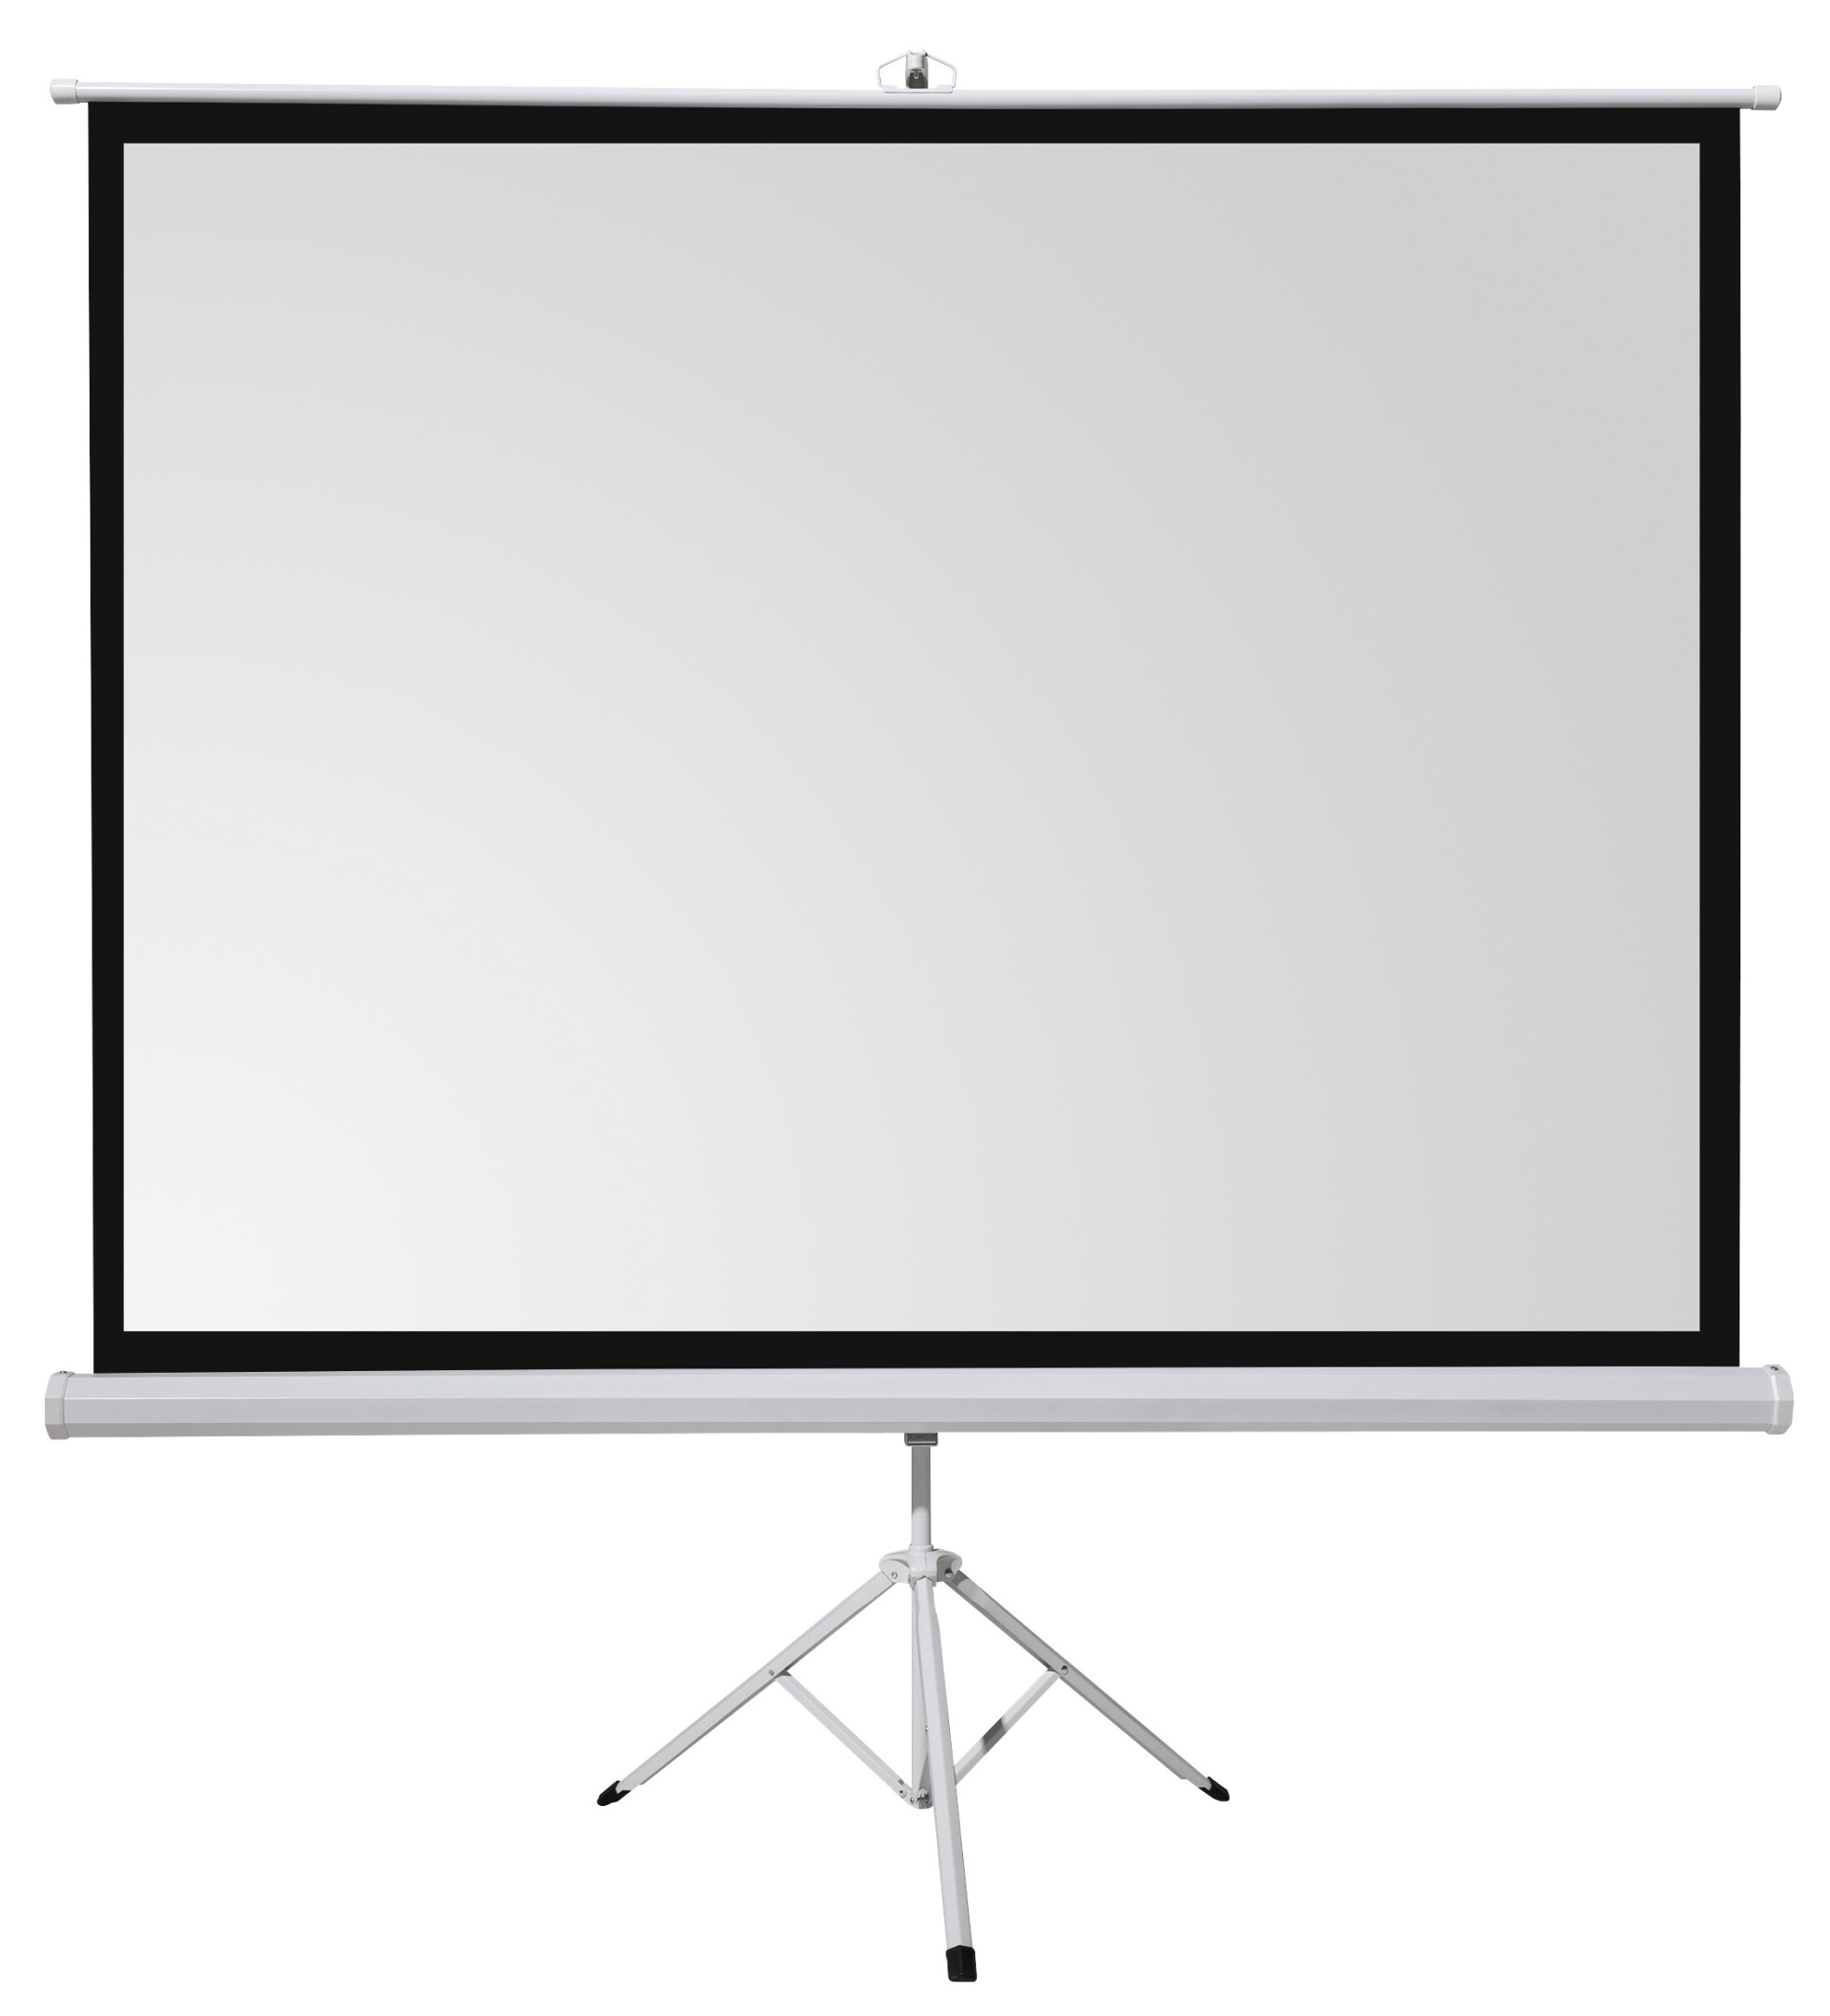 celexon-Basic-Mobiel-projector-statief-scherm-in-een-paar-minuten-op-te-zetten-af-te-breken-ideaal-voor-thuisbioscoop-kantoor-presentatie-of-school-220x220cm-123-1-1